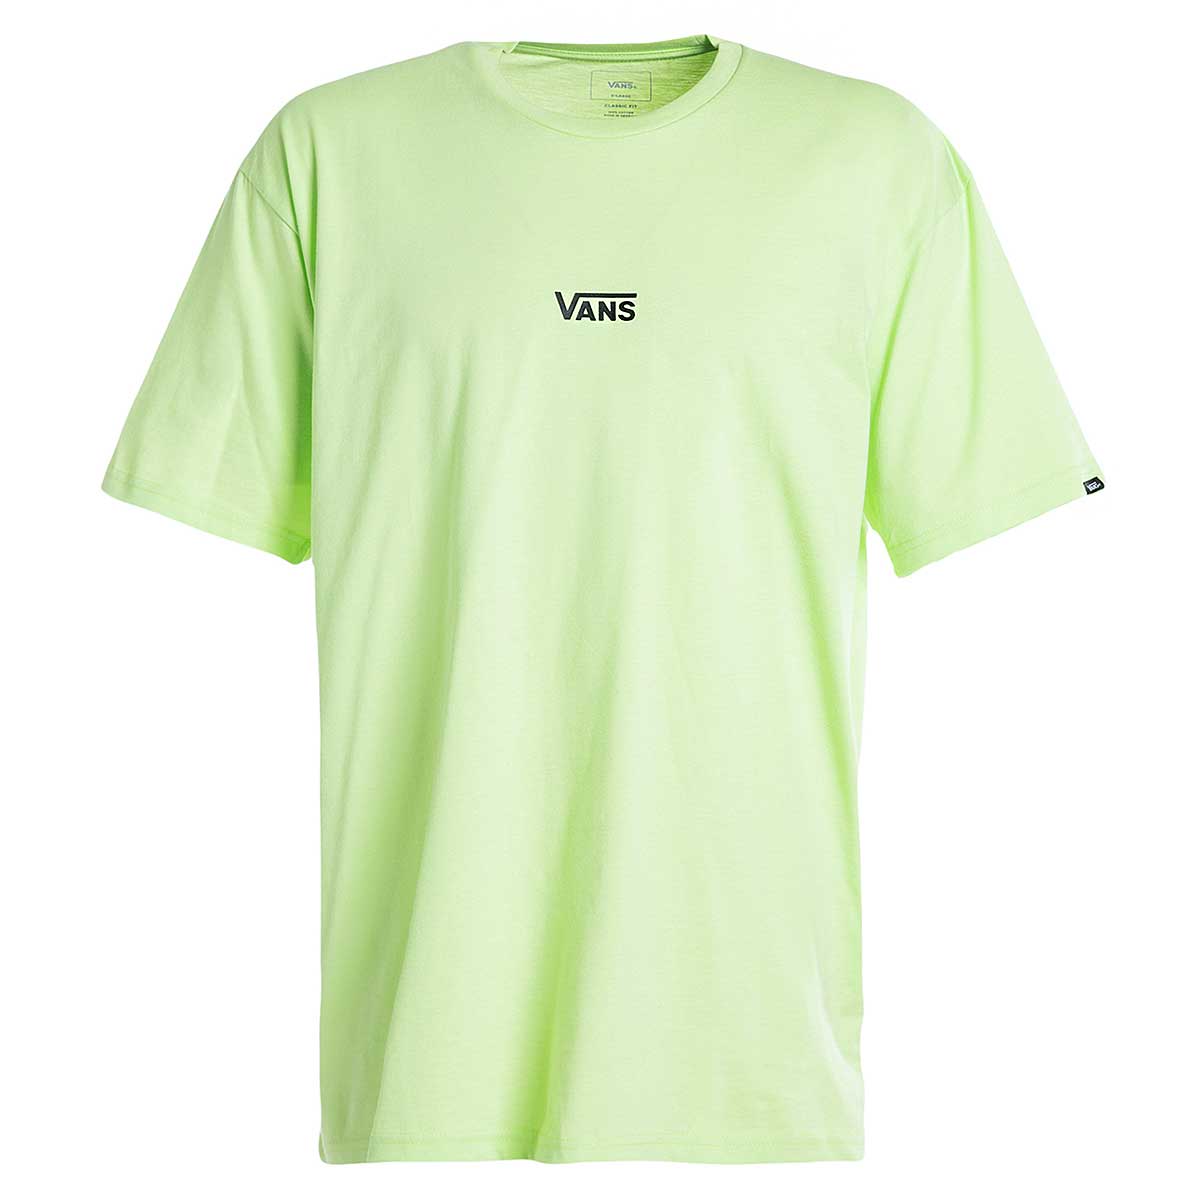 green vans t shirt